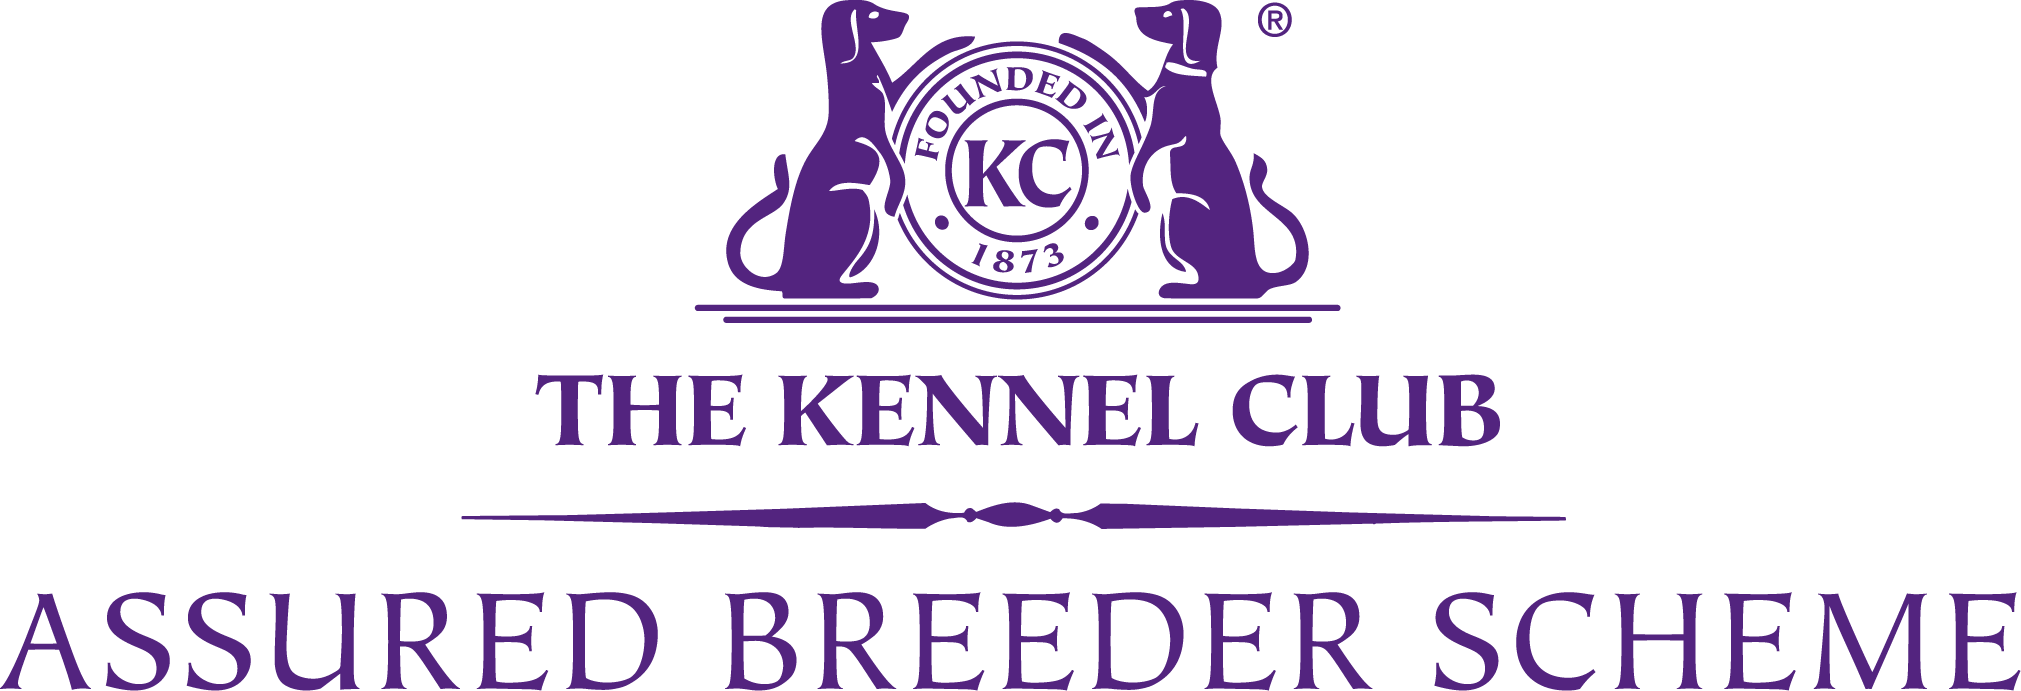 The Kennel Club - Assured Breeder Scheme